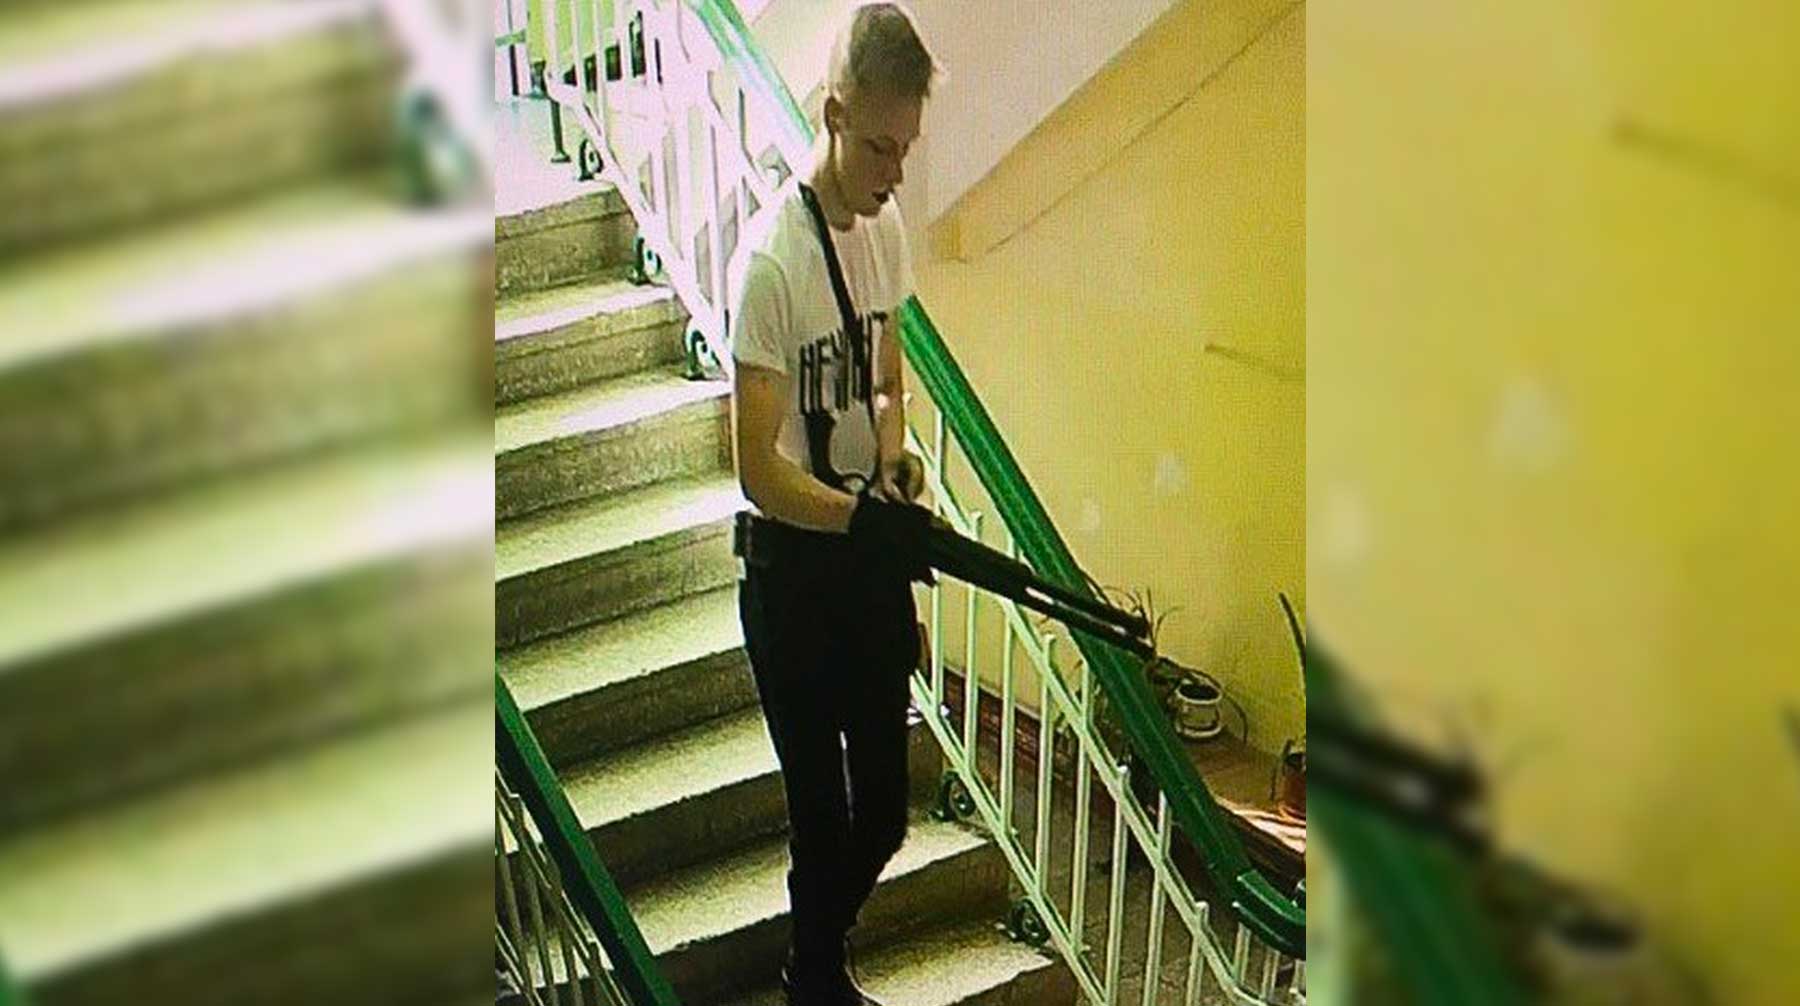 В школе подросток напал с топором на 12-летнюю ученицу и бросил бутылку с зажигательной смесью Владислав Росляков